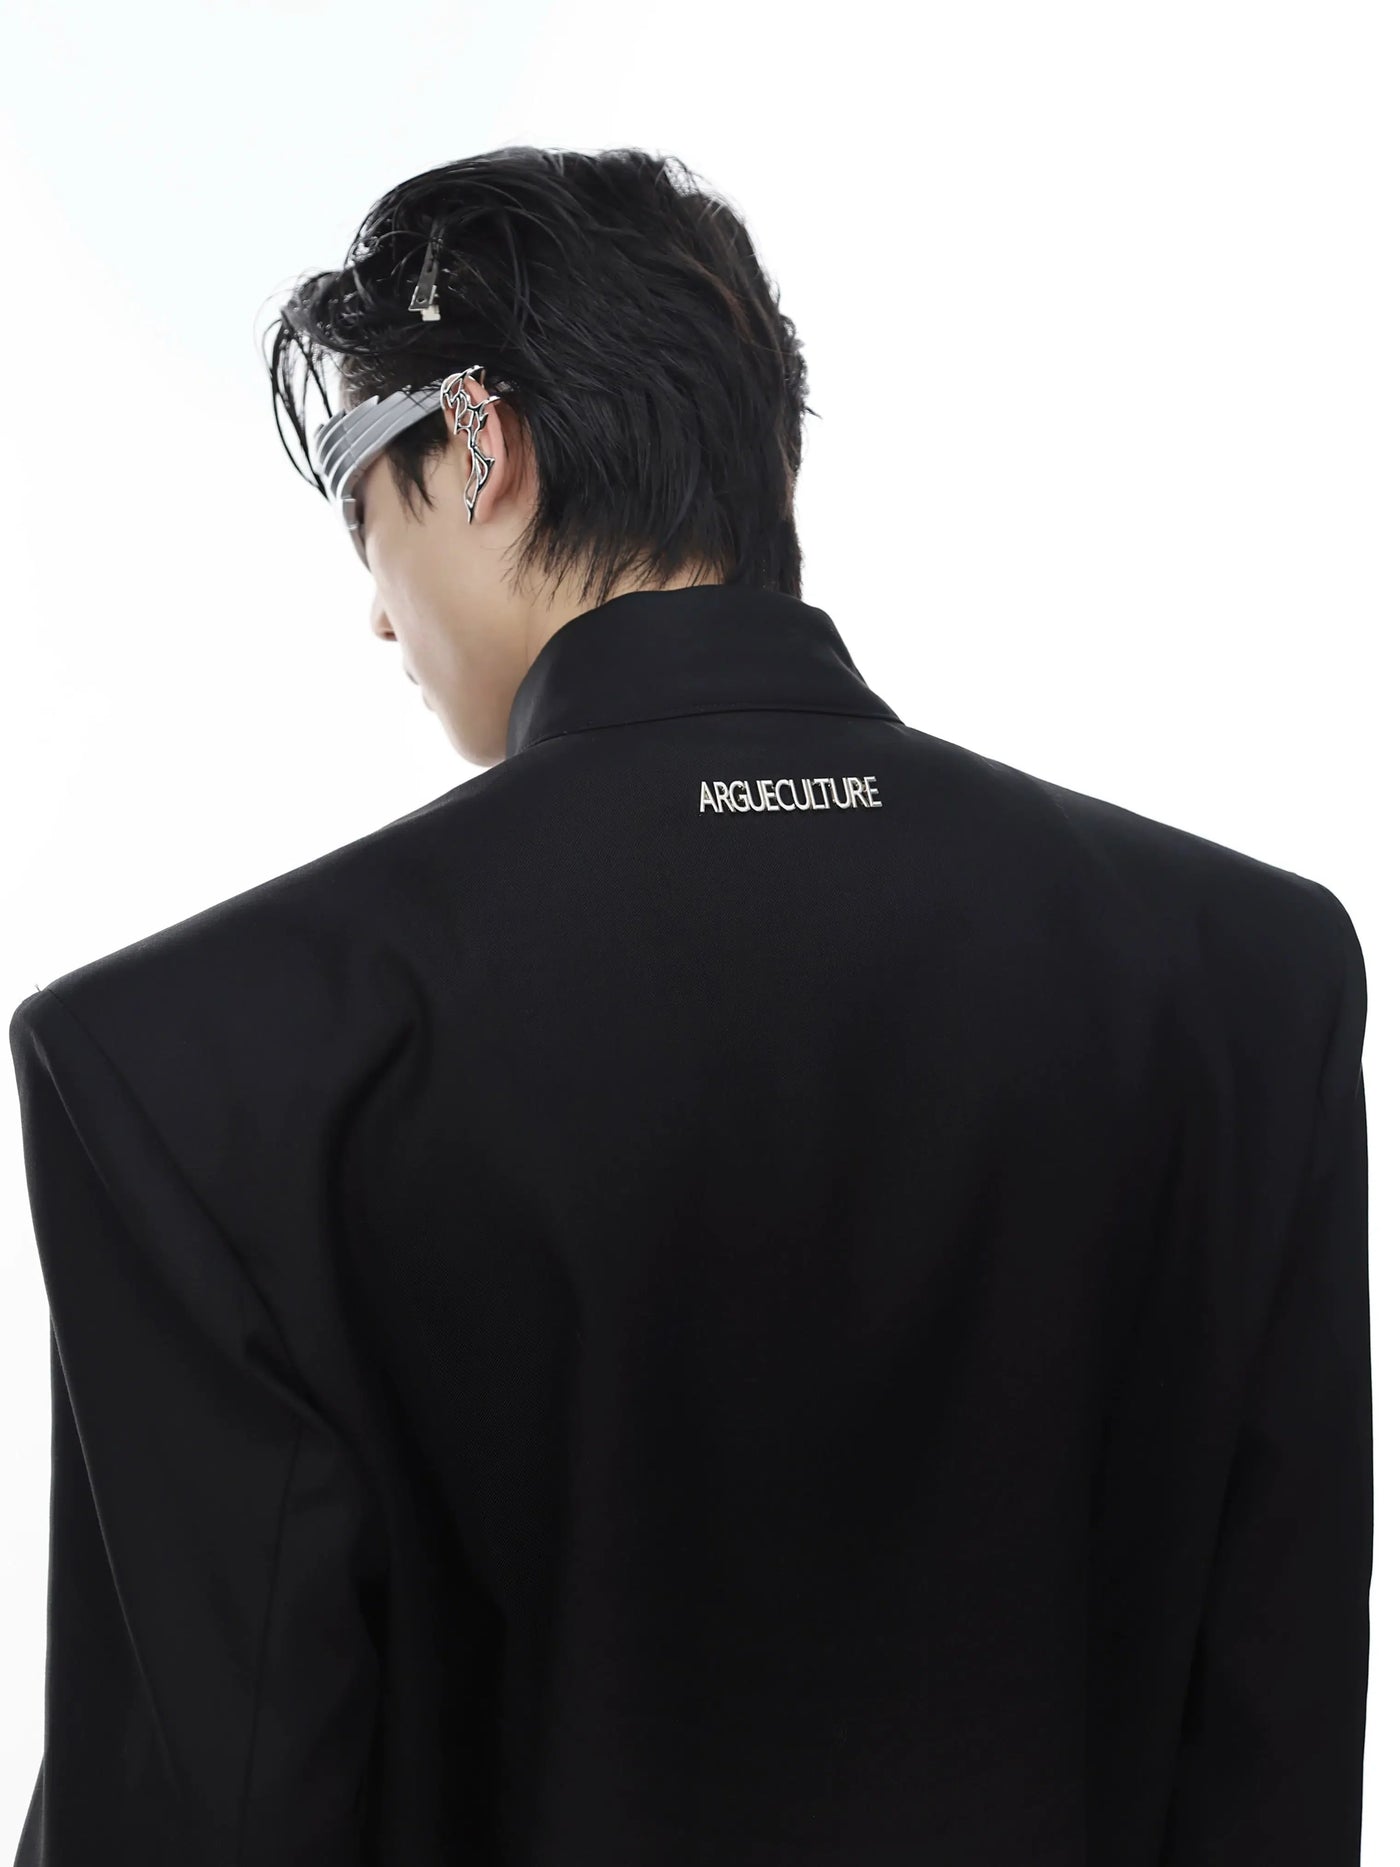 Shoulder Metal Link Zipped Jacket Korean Street Fashion Jacket By Argue Culture Shop Online at OH Vault